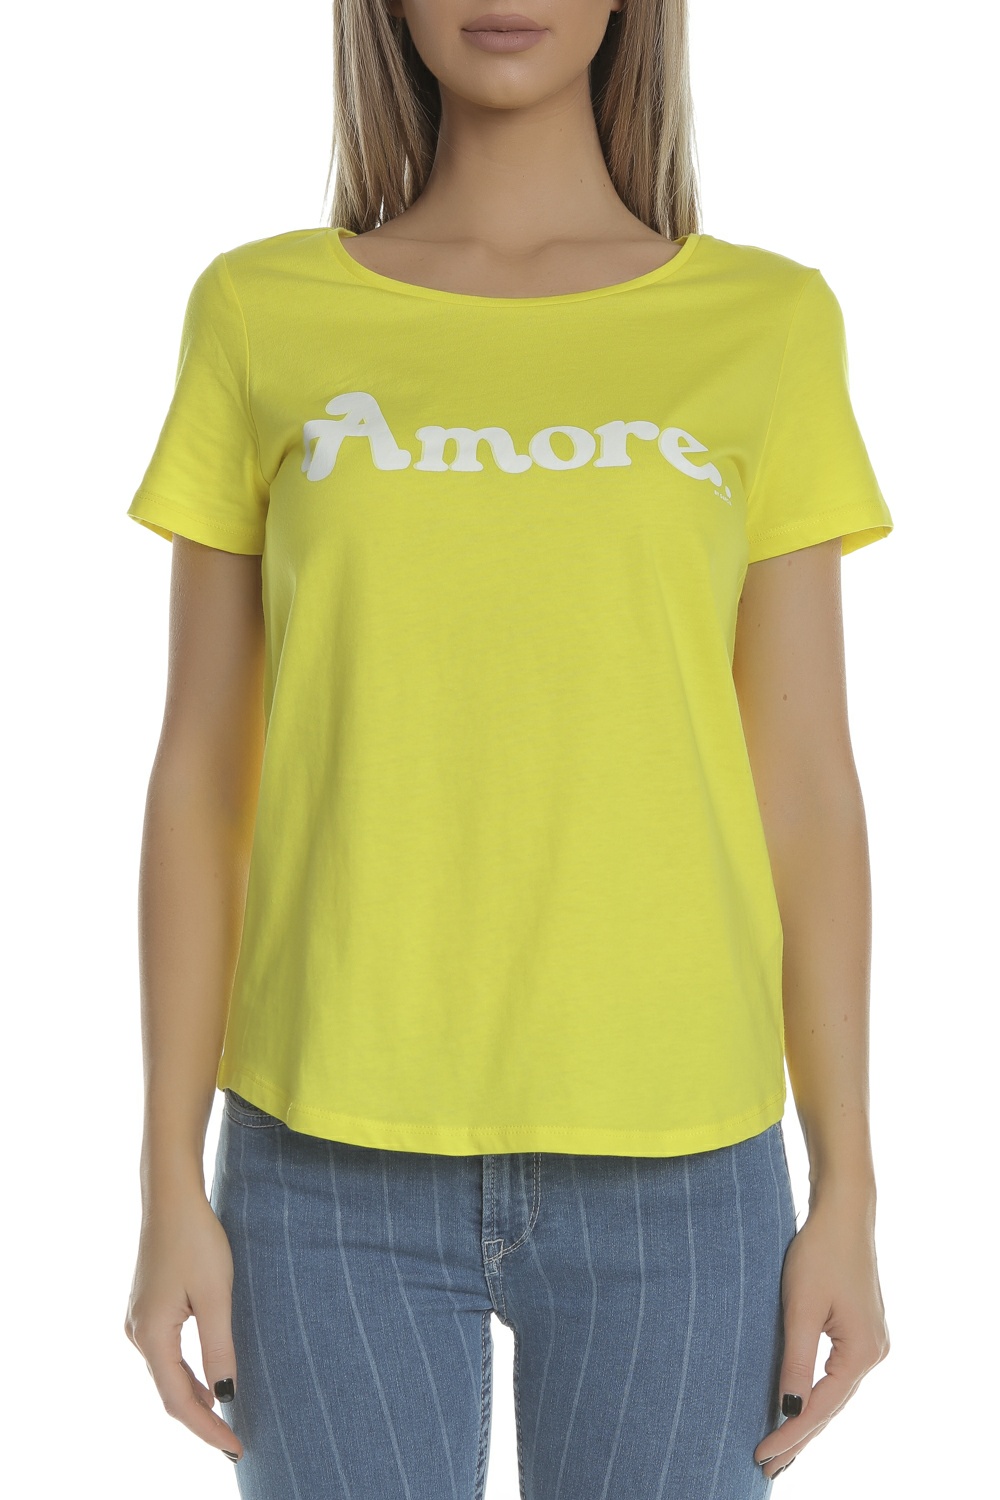 Γυναικεία/Ρούχα/Μπλούζες/Κοντομάνικες GARCIA JEANS - Γυναικεία κοντομάνικη μπλούζα GARCIA JEANS κίτρινη